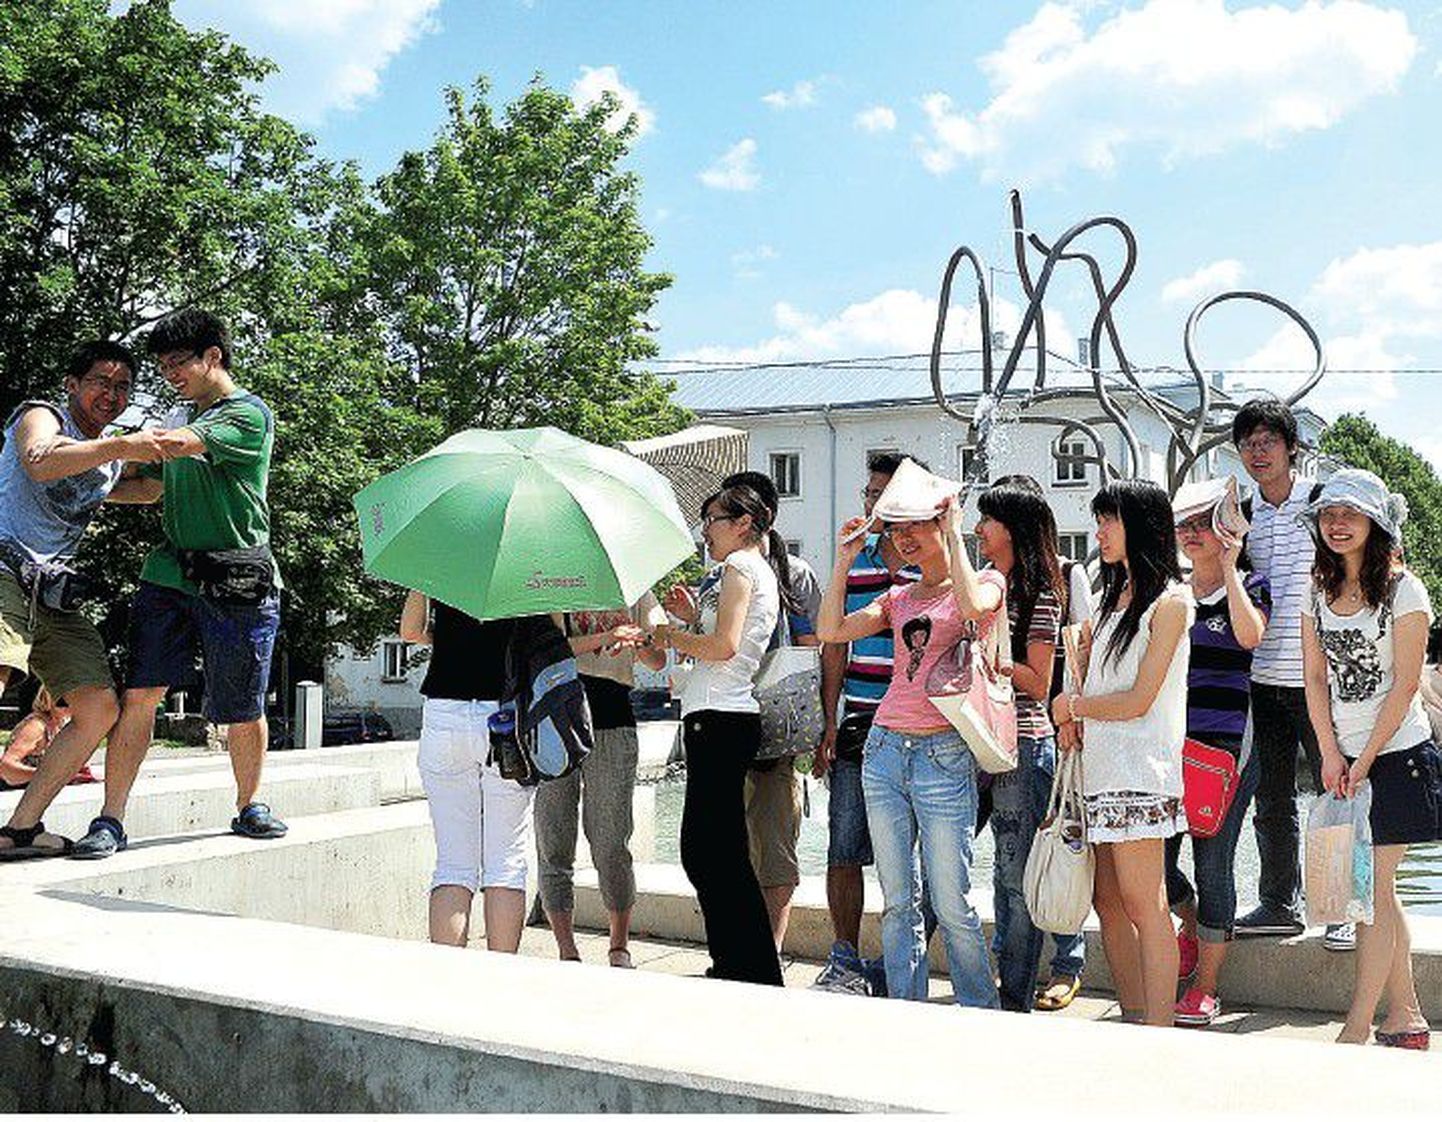 Nanjingi Southeasti ülikooli meditsiinitudengitele on suveülikool korraga töö ja lõbu. Mitmesuguste meditsiinialaste tegevuste vahepeal on neil ka piisavalt aega, et linnaga tutvuda ja suvest rõõmu tunda. Ling Long (pildil vasakult esimene) ja Feiran Wei (rohelises särgis) sisustasid vaba aega sõpradele meeleoluka ja võitlusliku etenduse andmisega.